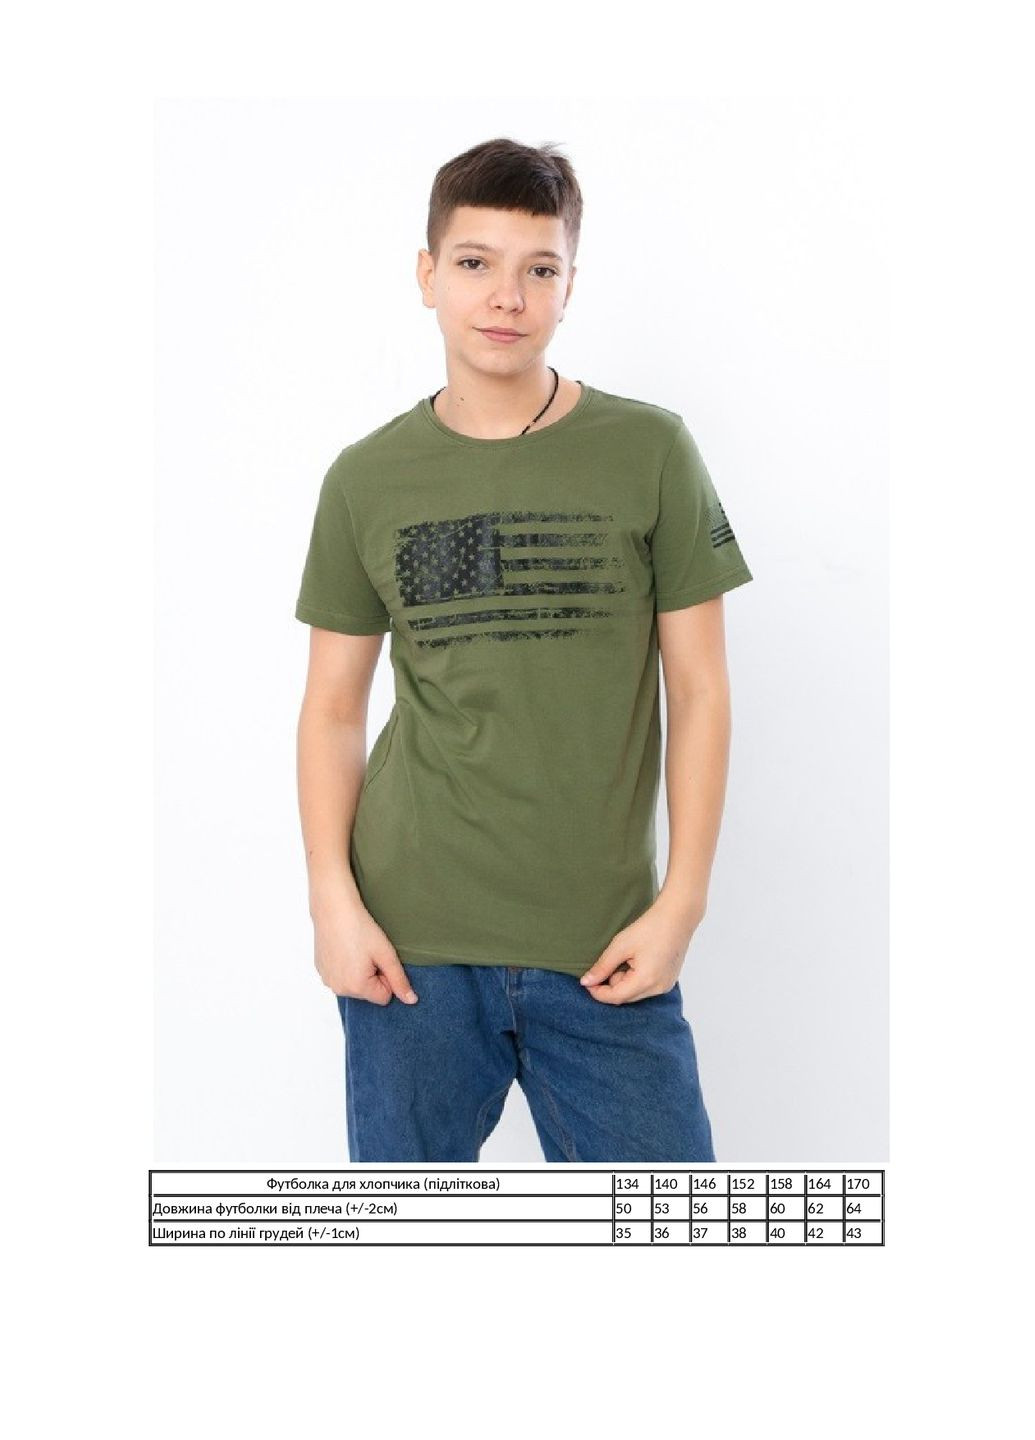 Хаки (оливковая) летняя футболка для мальчика (подростковая) KINDER MODE